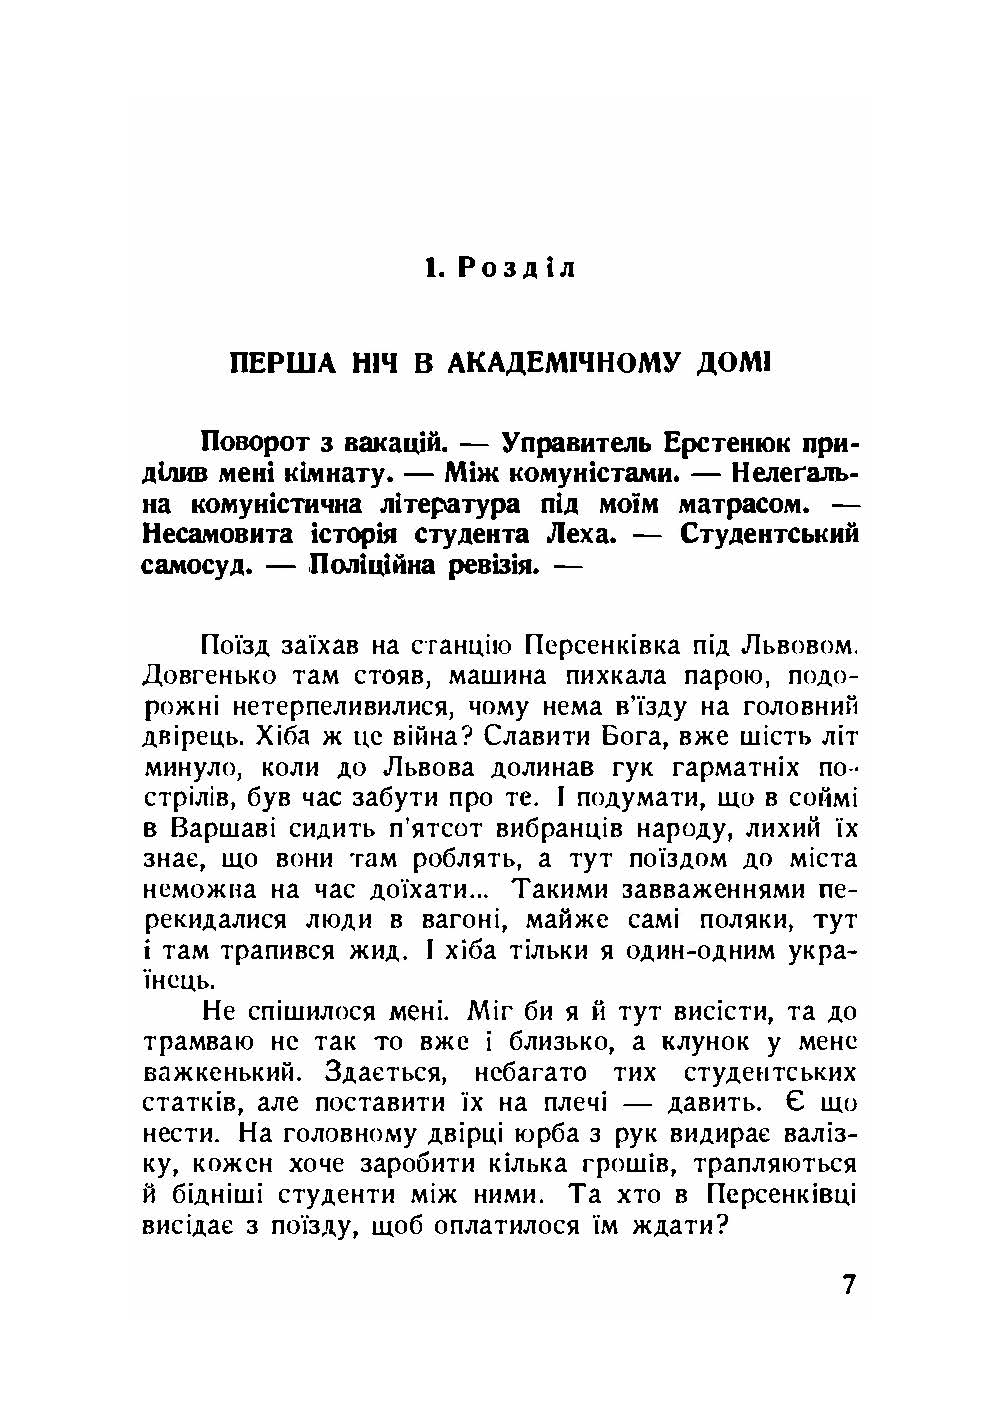 Далекий приціл. Українська військова організація в 1927-1929 роках. Автор — Книш Зіновій. 